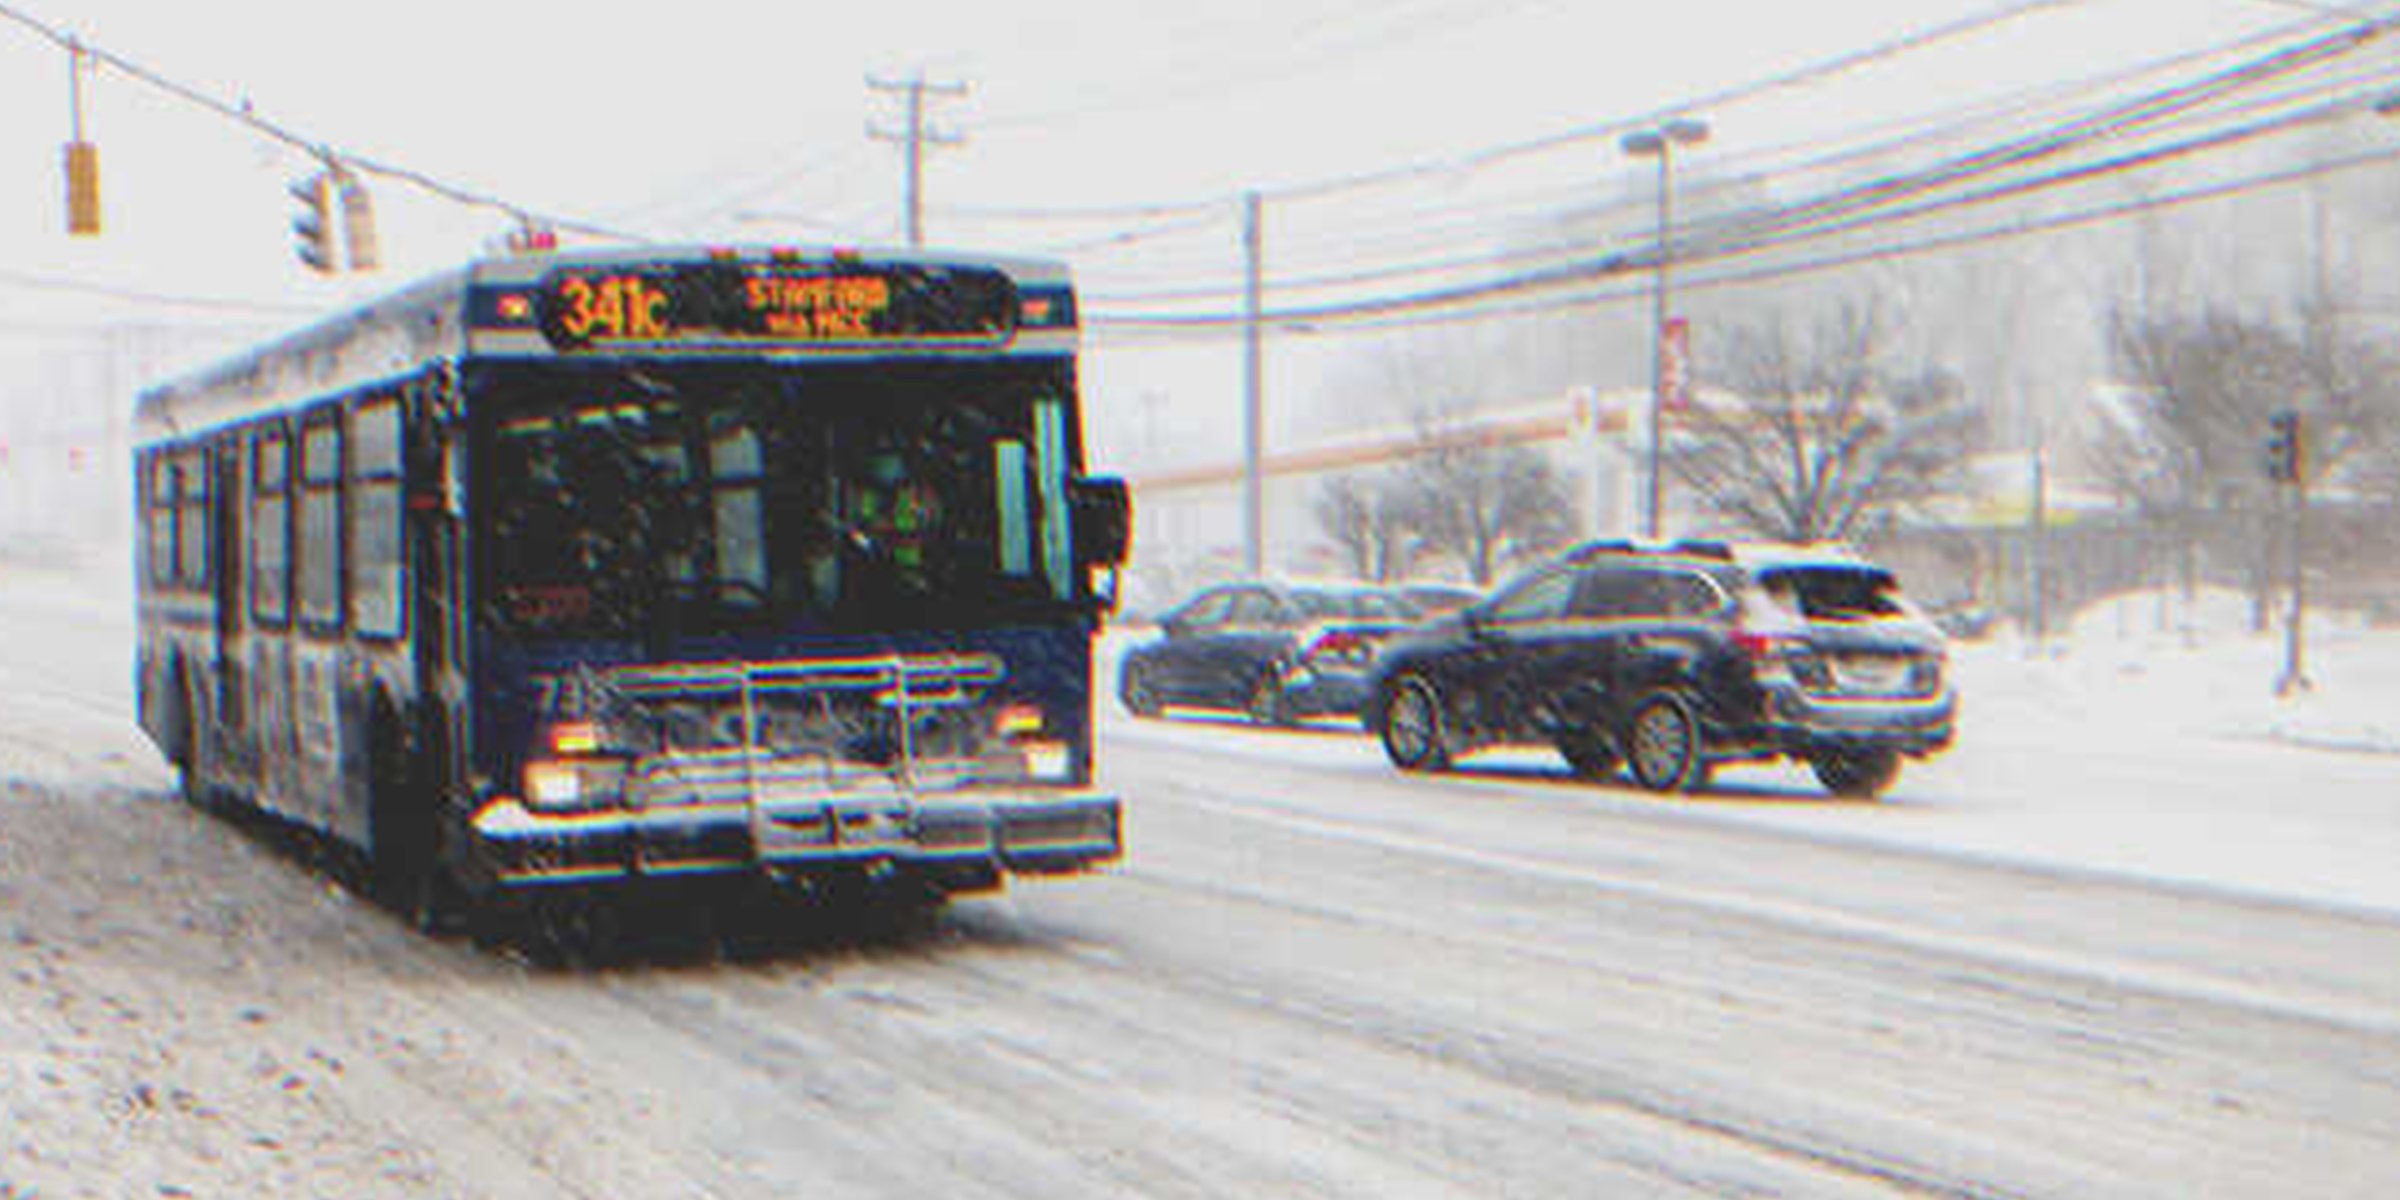 Ein Bus auf einer verschneiten Straße | Quelle: Shutterstock